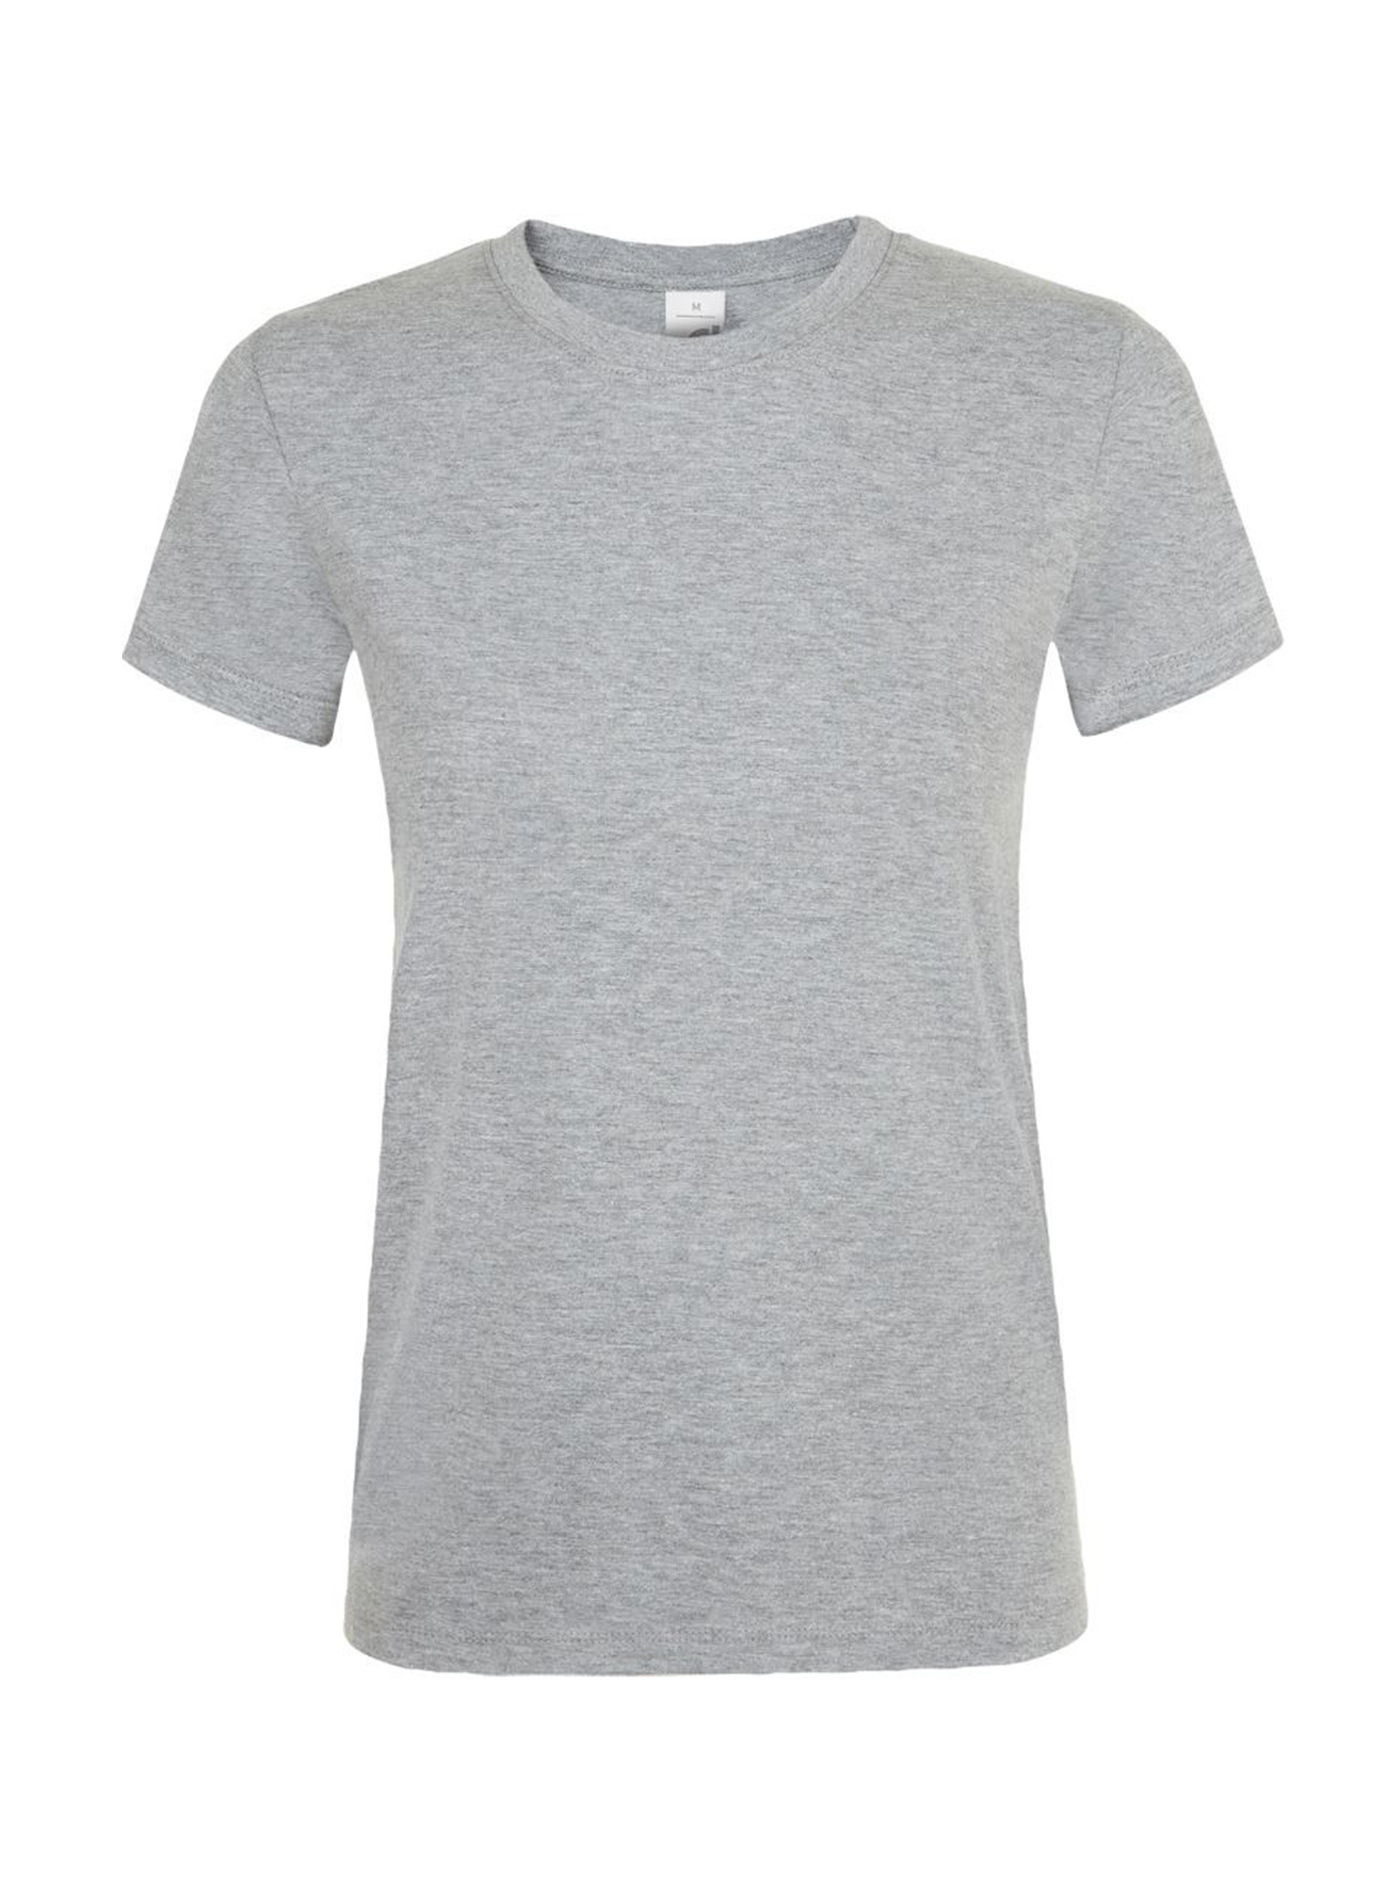 Dámské tričko SOL'S Regent - Světle šedý melír M